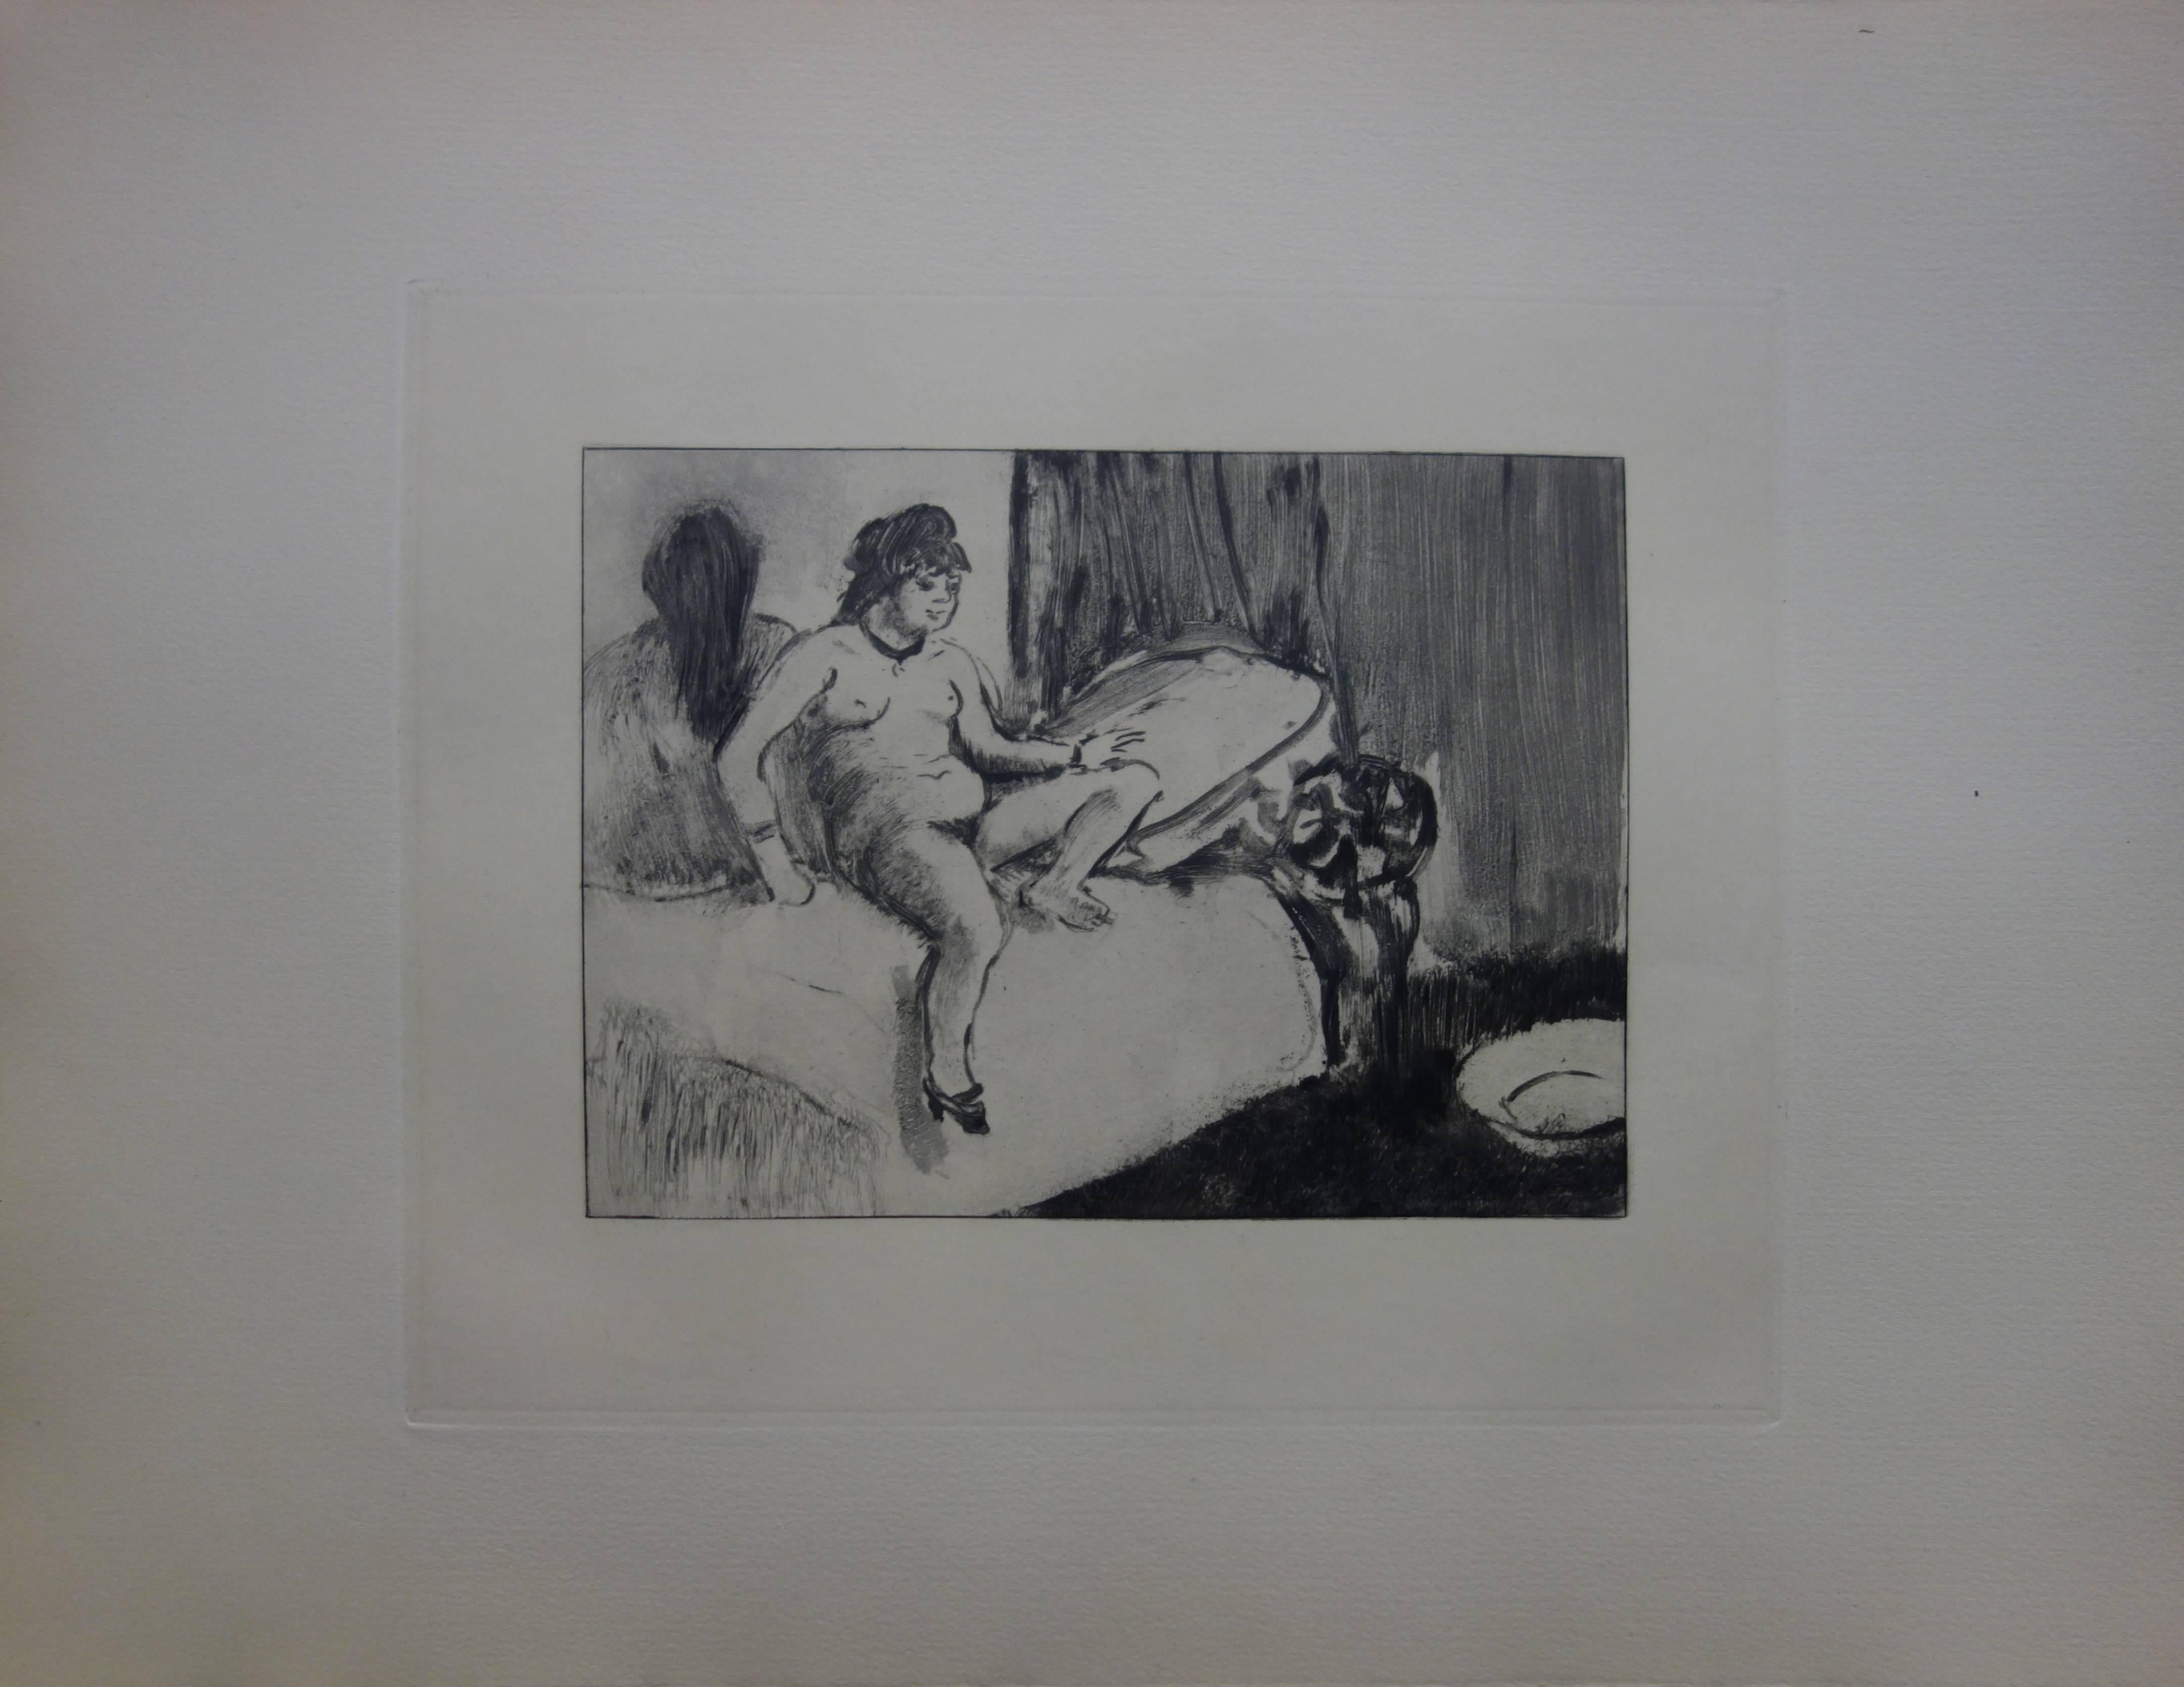 Scène de serre : Dans la pièce avec un miroir - eau-forte - Print de (after) Edgar Degas